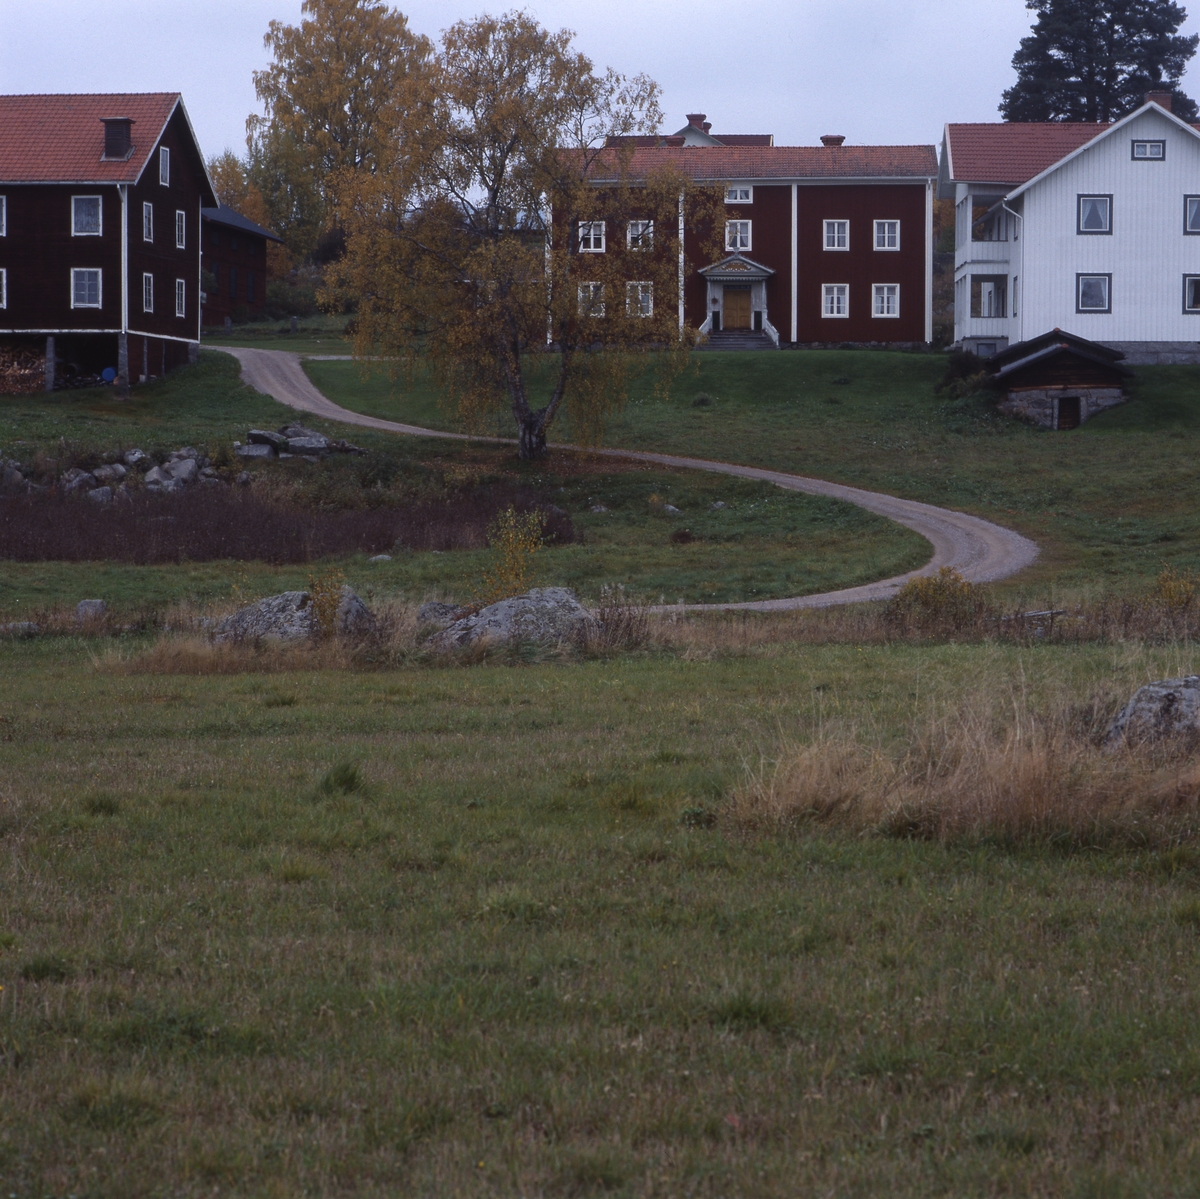 Gård i Ovanåker, 7 oktober 2001.